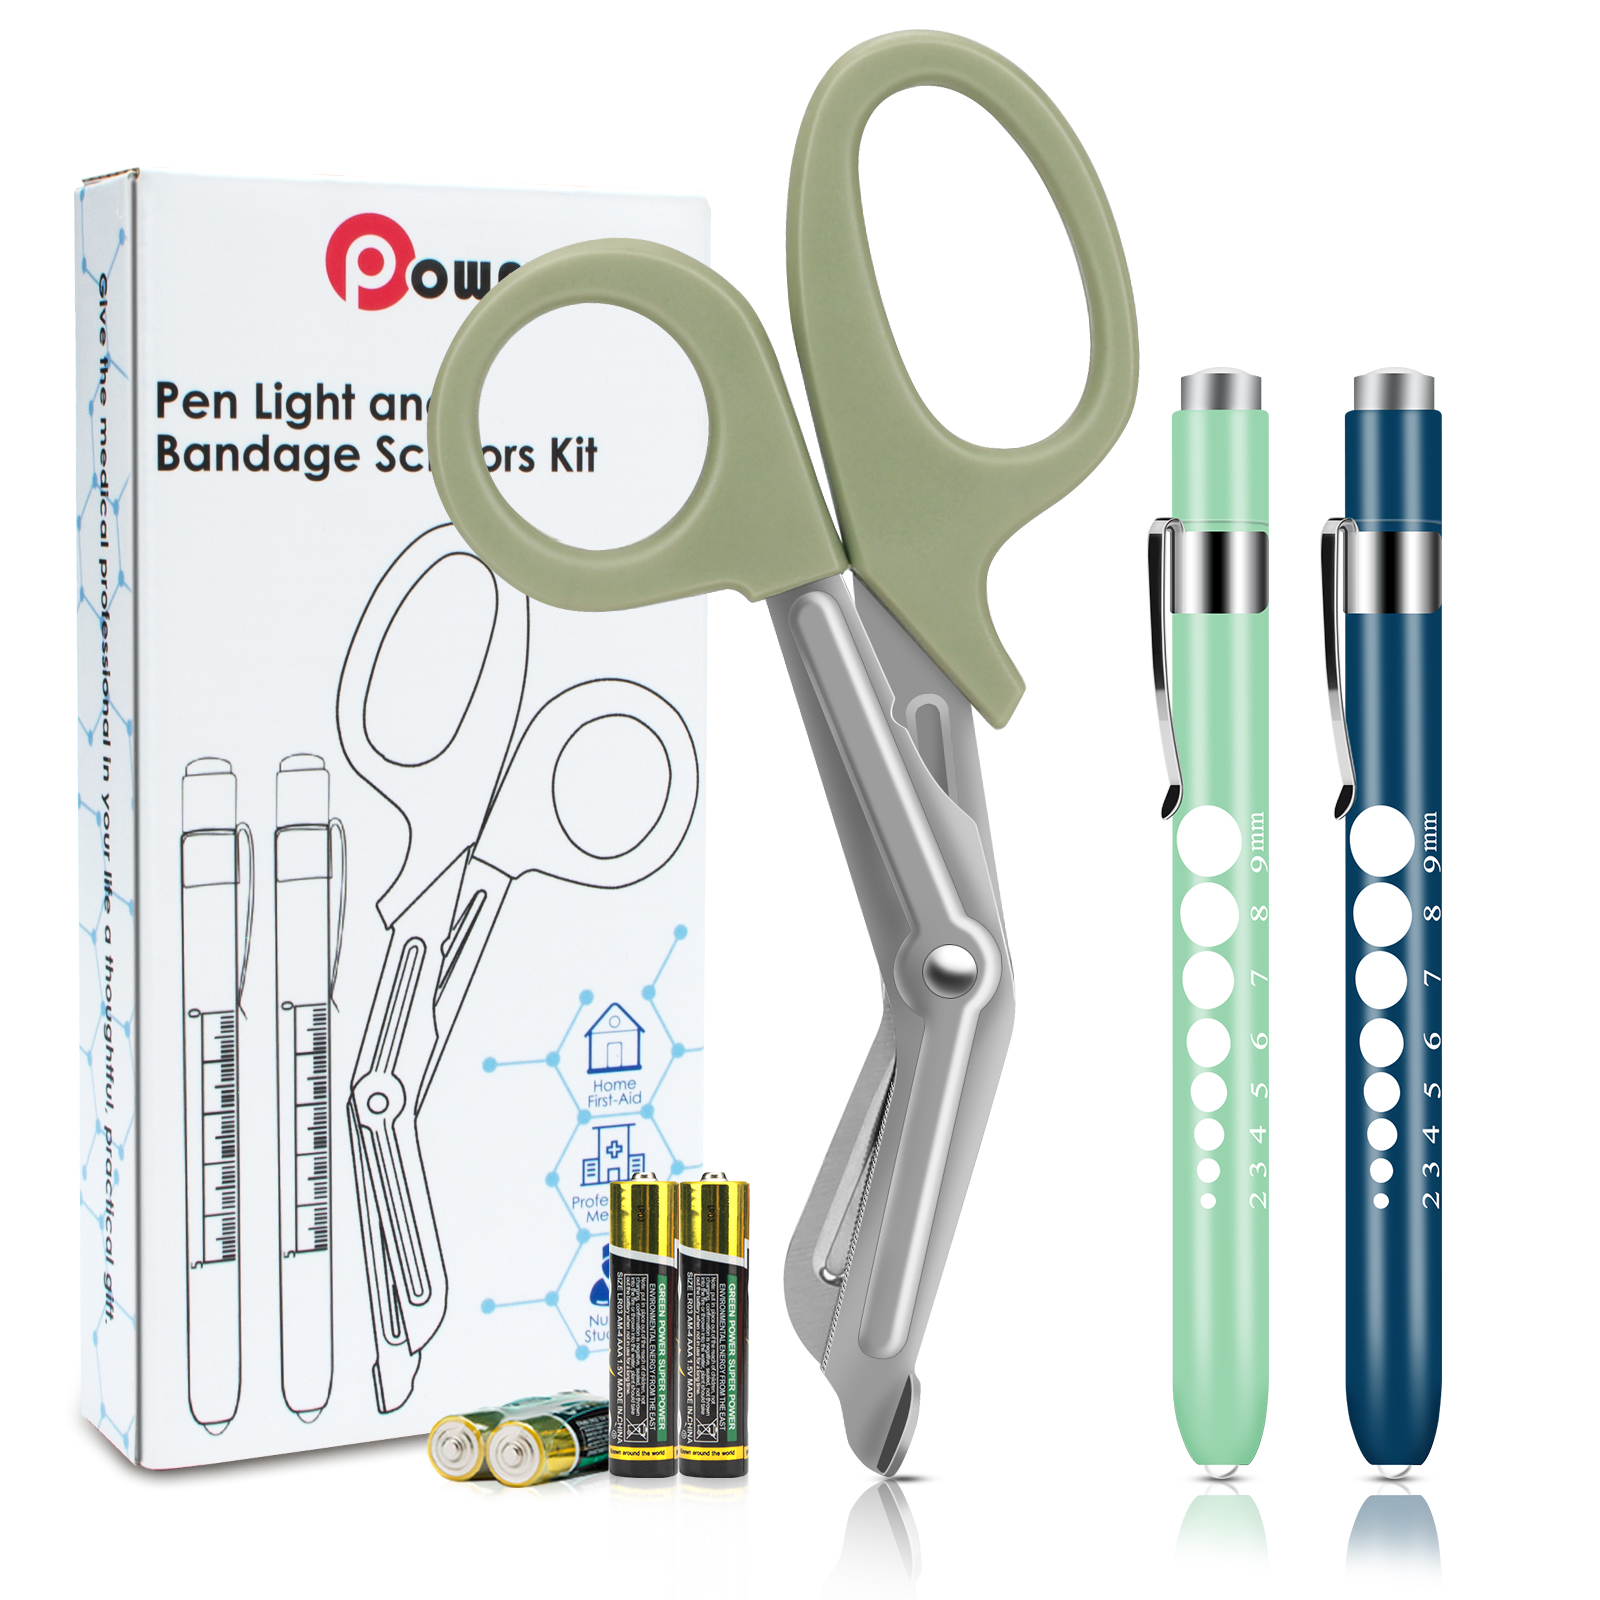 OPOWAY Medical Pen Light et Ciseaux à Bandage Vert 3 Pack, Deux lampes-stylos LED réutilisables pour élèves, avec des piles gratuites